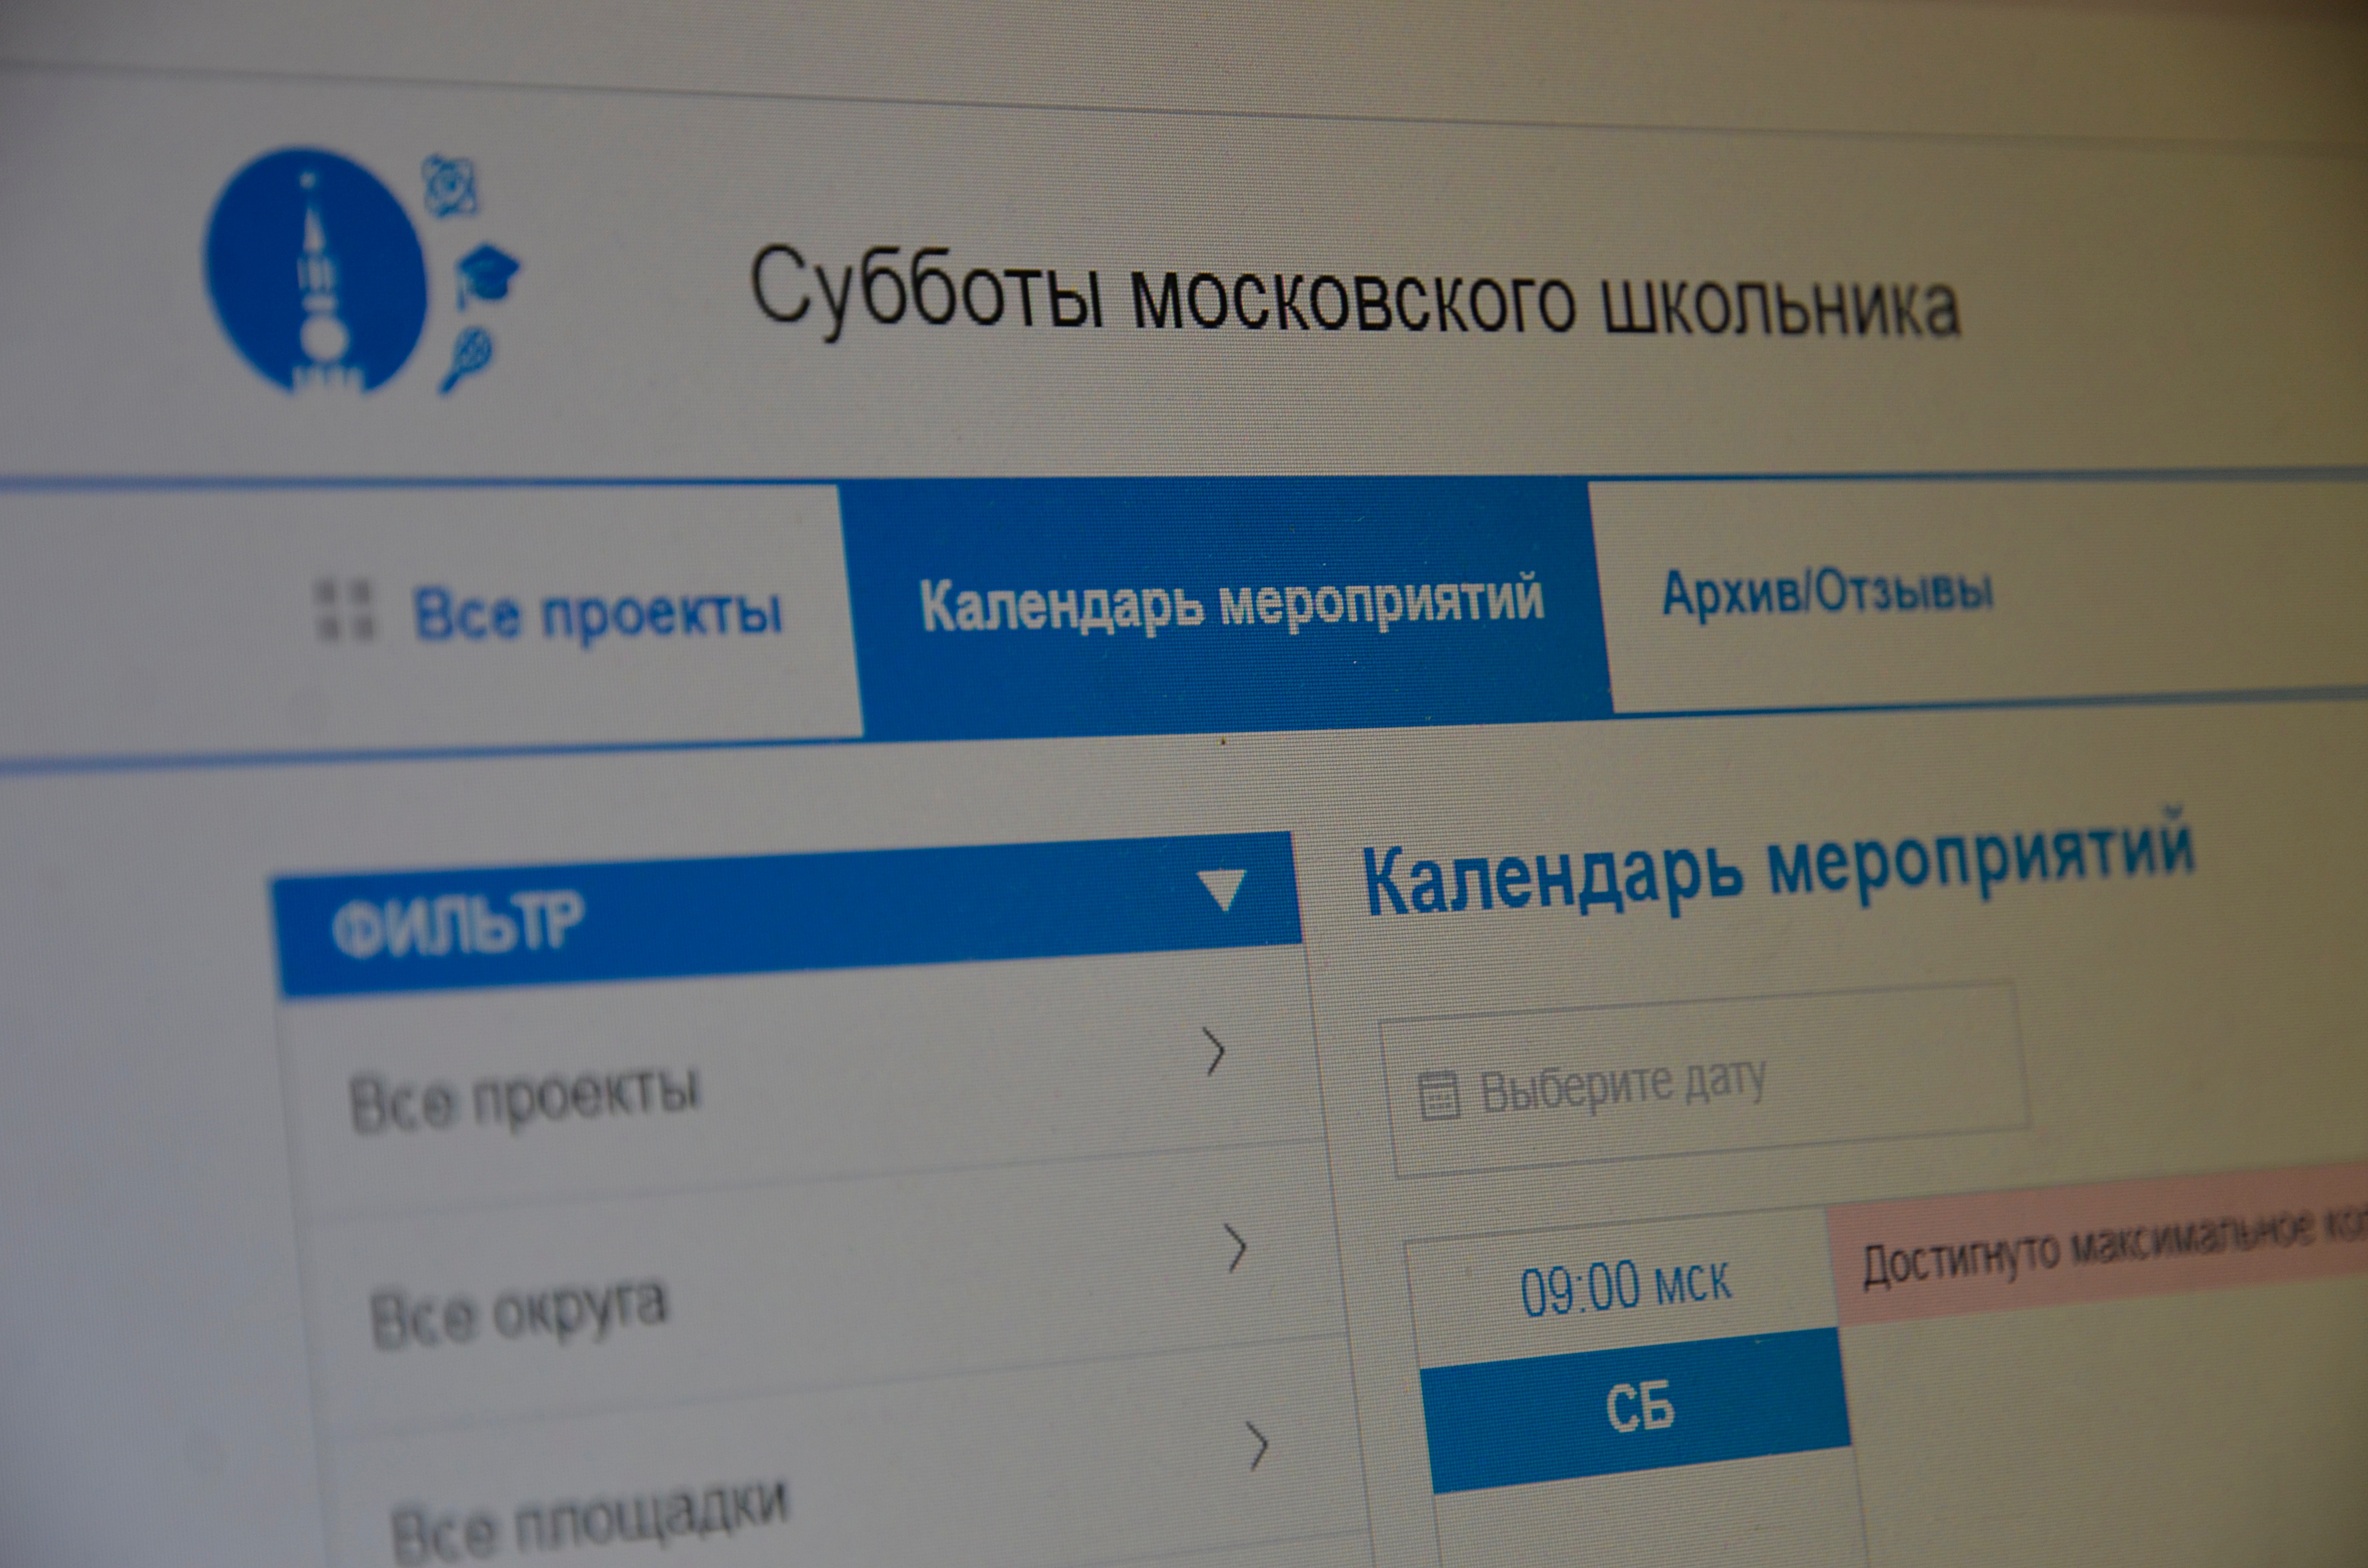 Школьники из поселения Михайлово-Ярцевское смогут присоединиться к онлайн-квизу